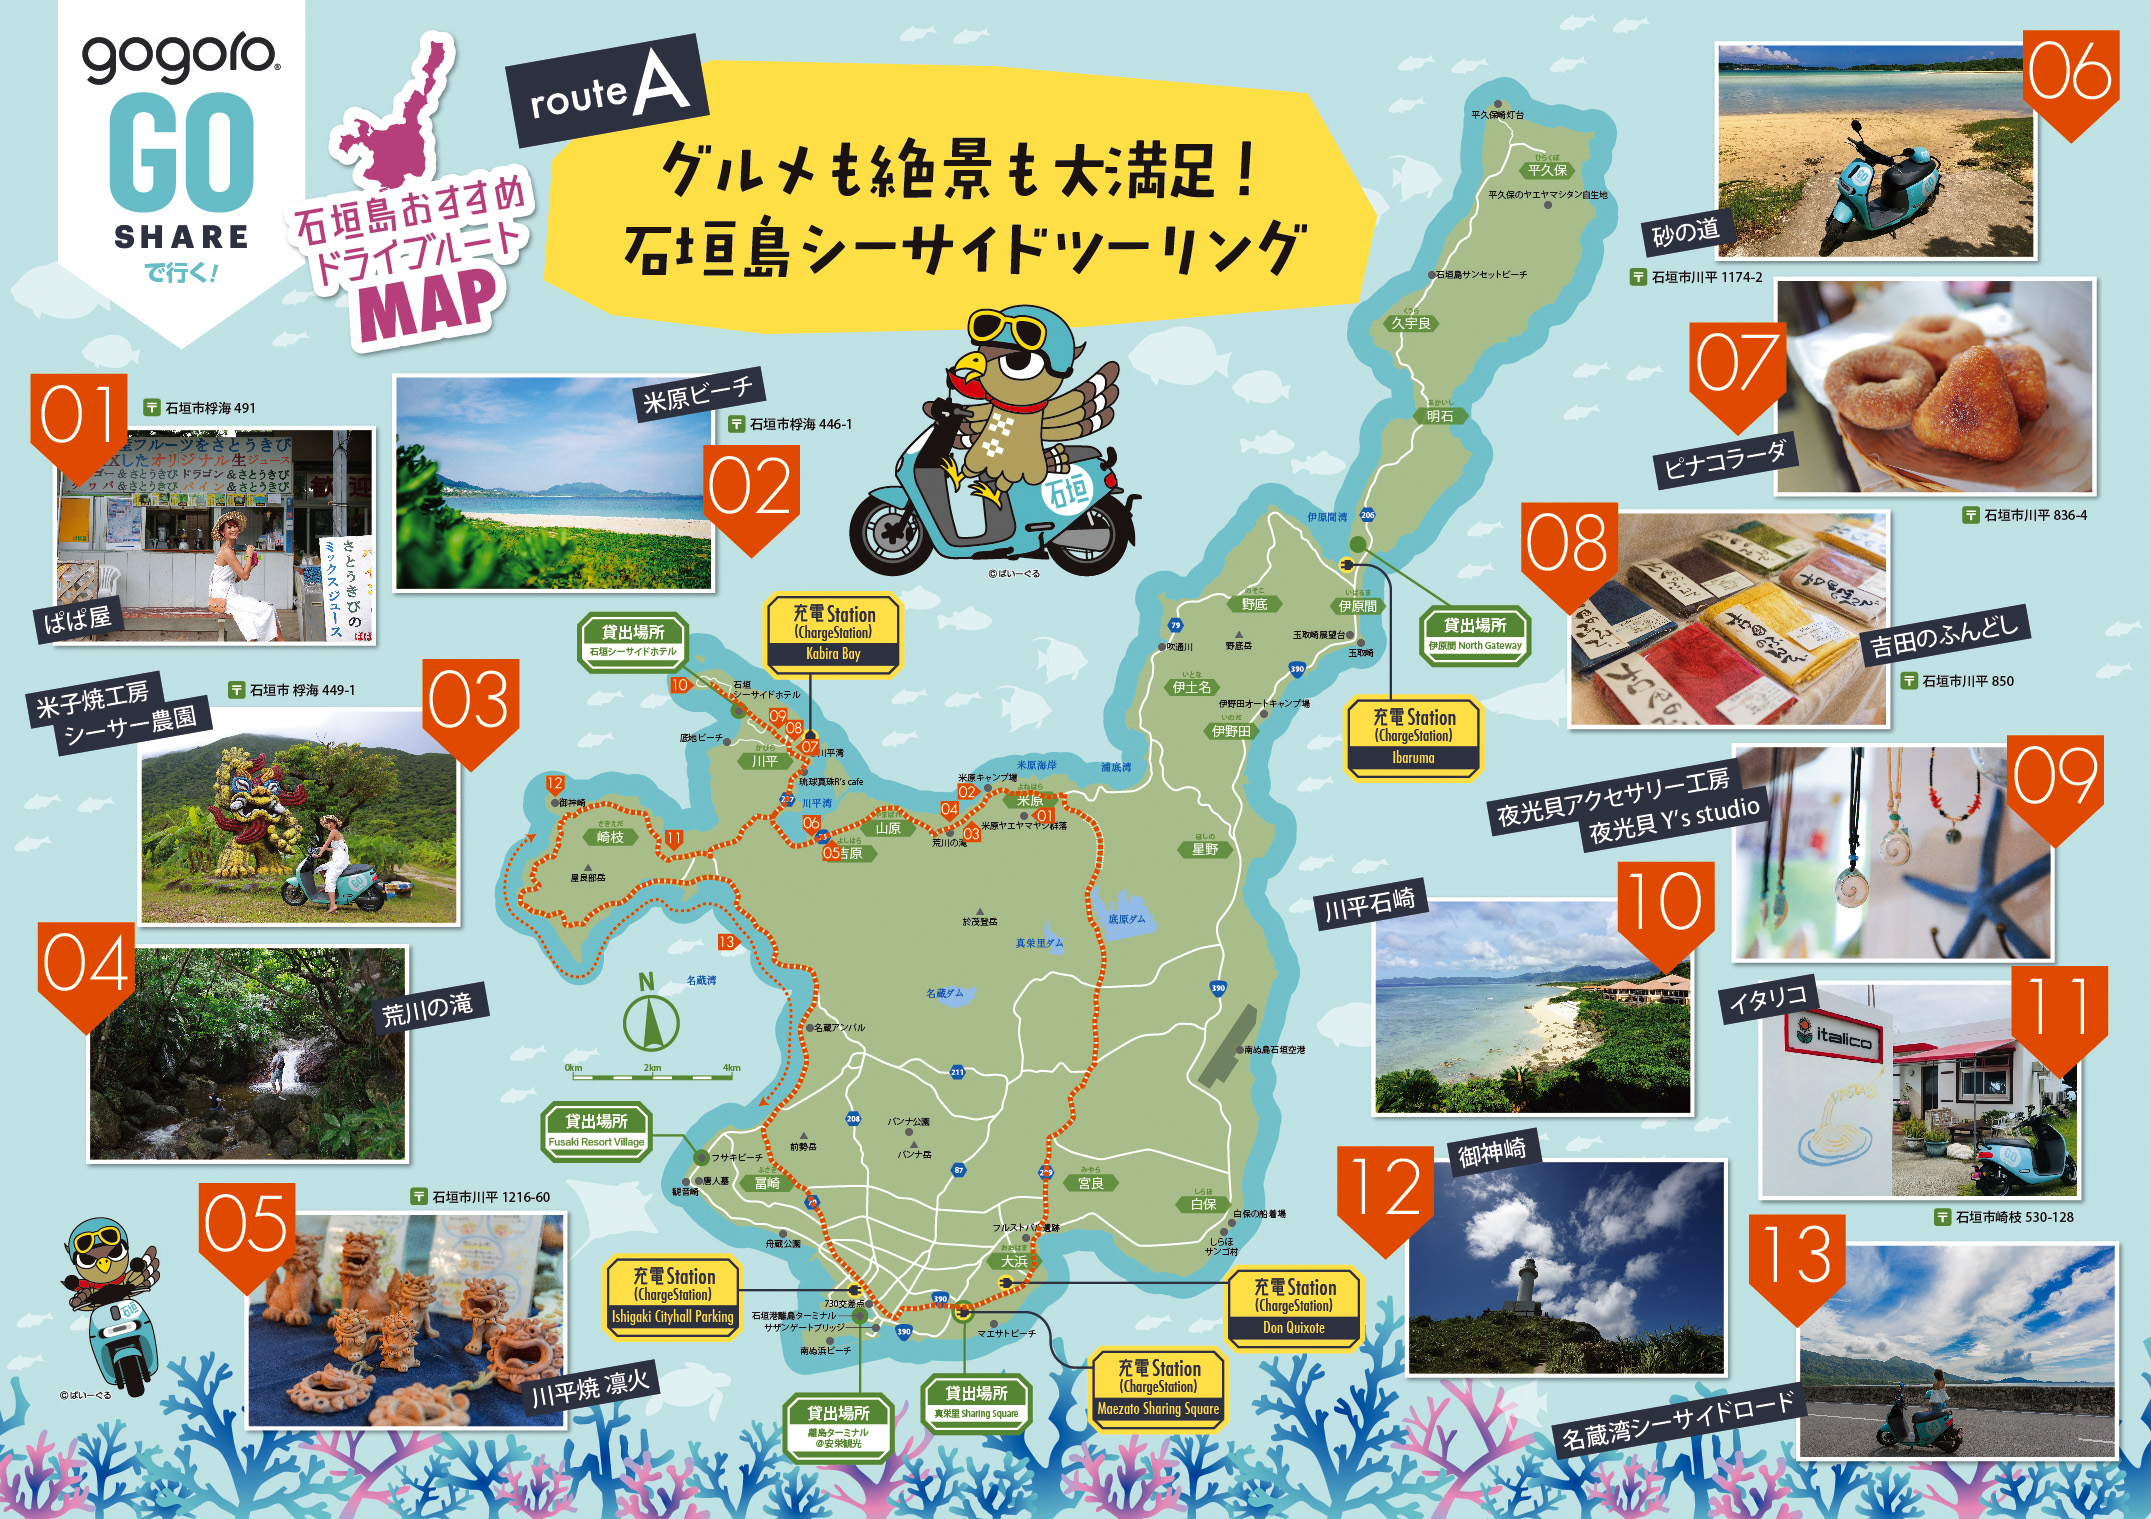 電動レンタルバイクで巡る石垣島のおすすめツーリングコースをご紹介 Go Share 公式